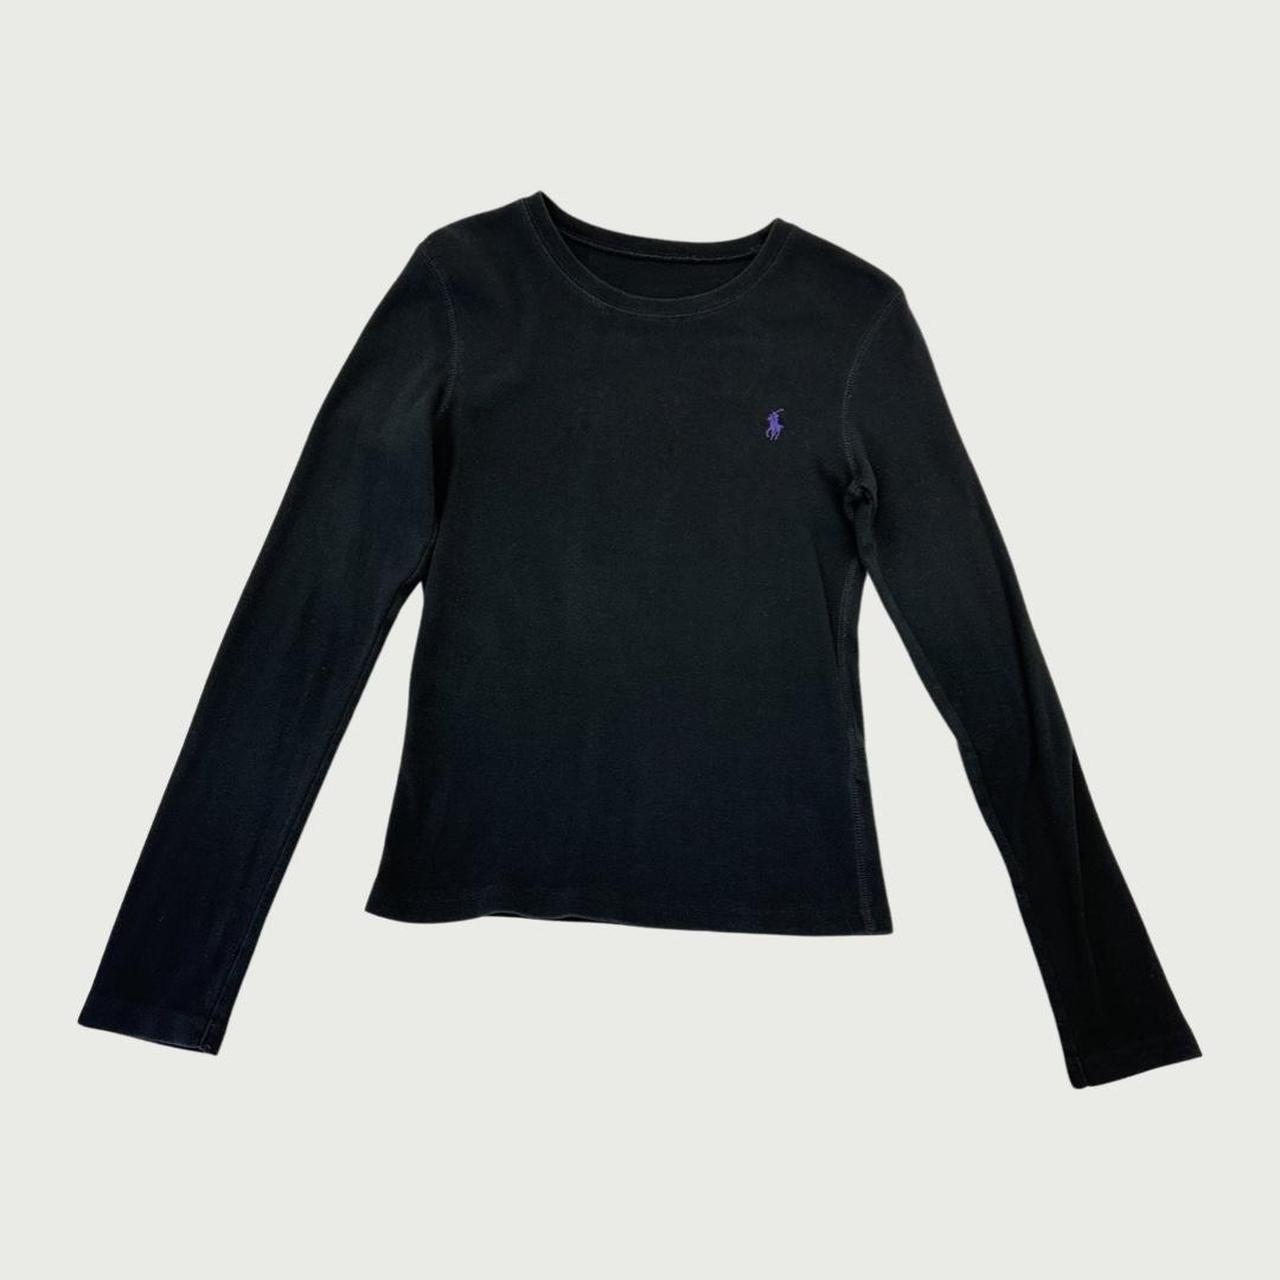 Polo Ralph Lauren Women's Black T-shirt